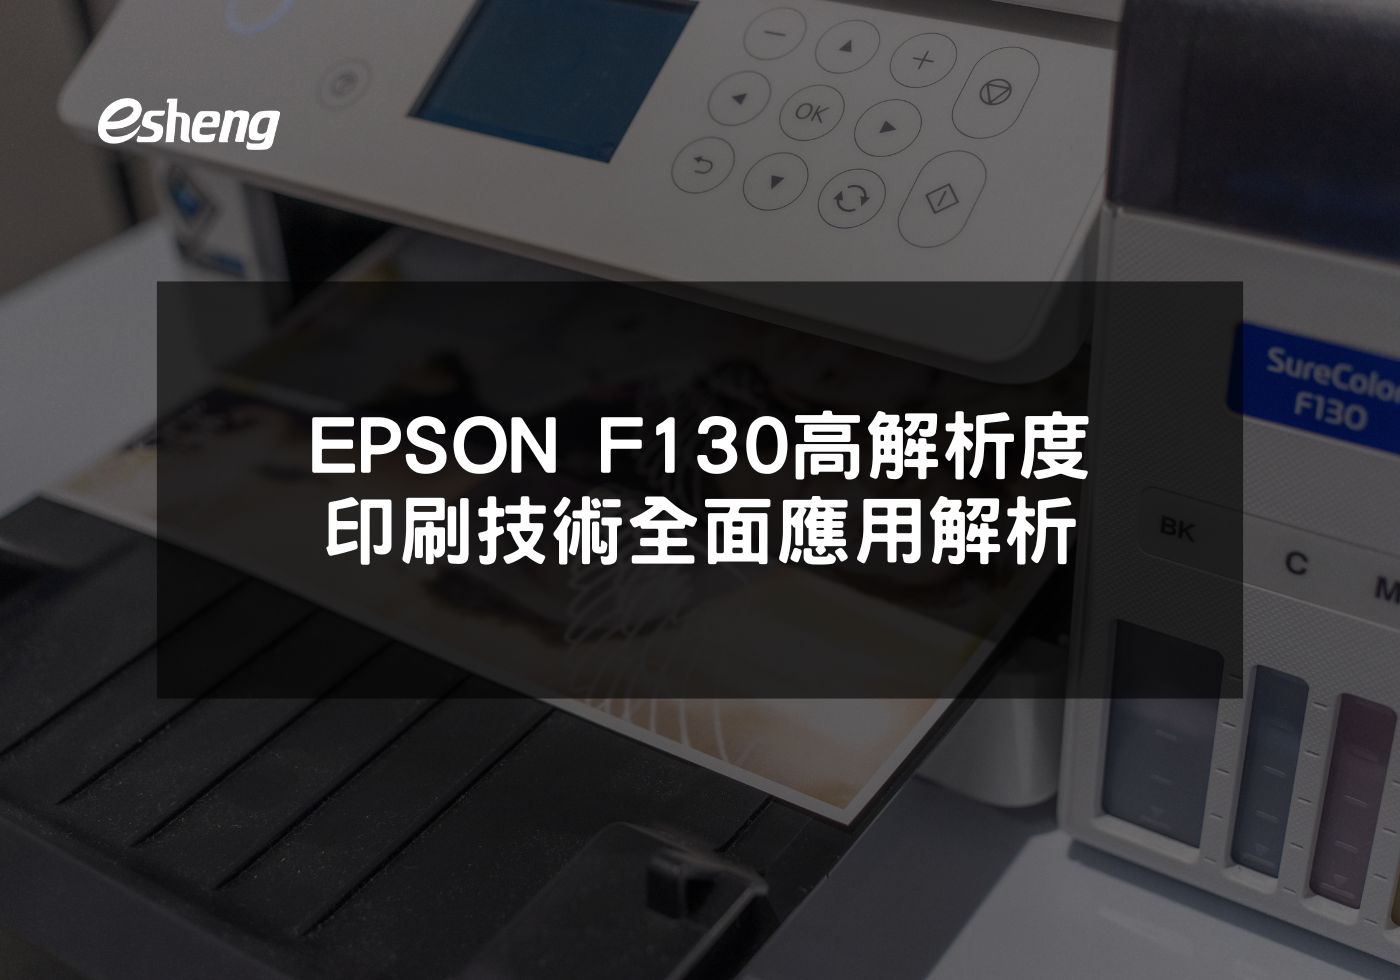 您目前正在查看 EPSON F130高解析度印刷技術全面應用解析